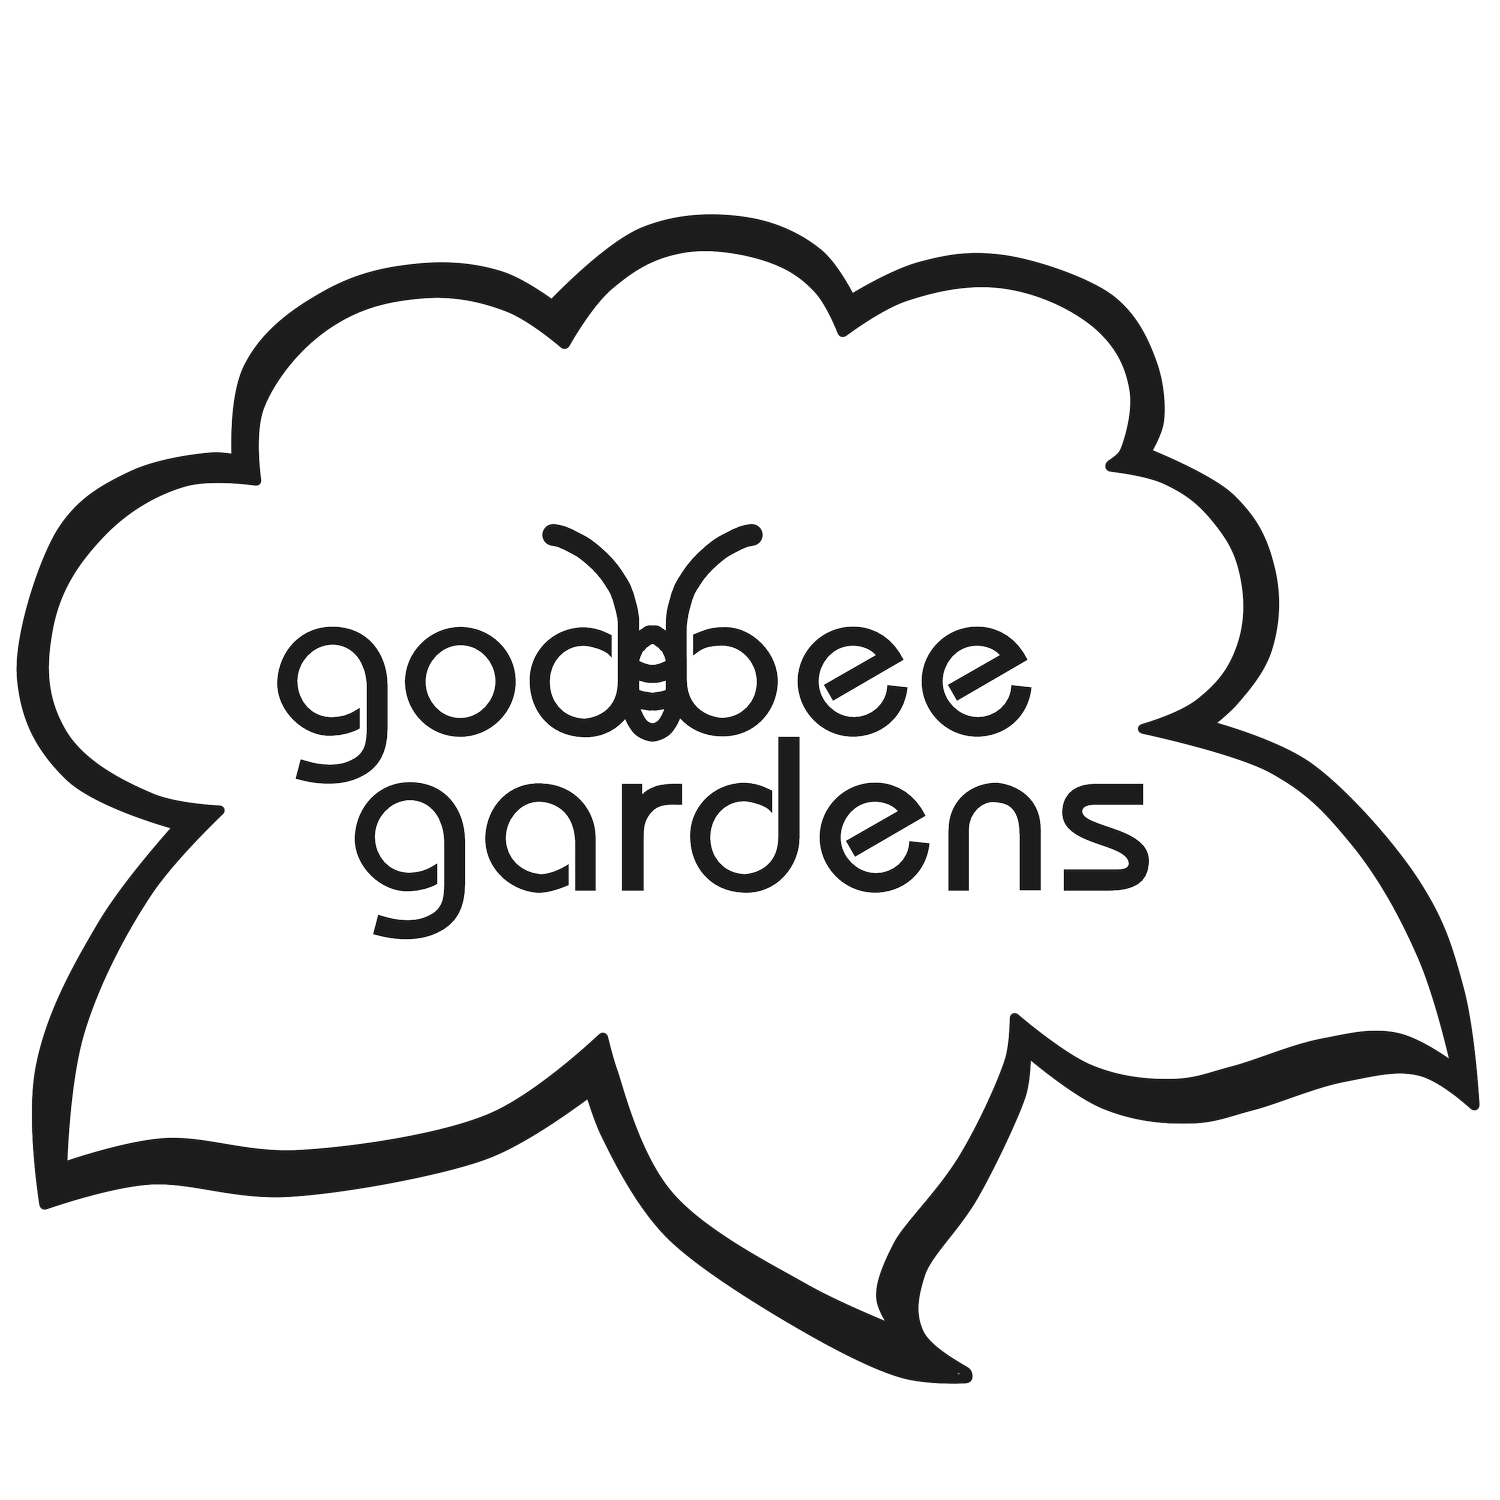 Godbee Gardens